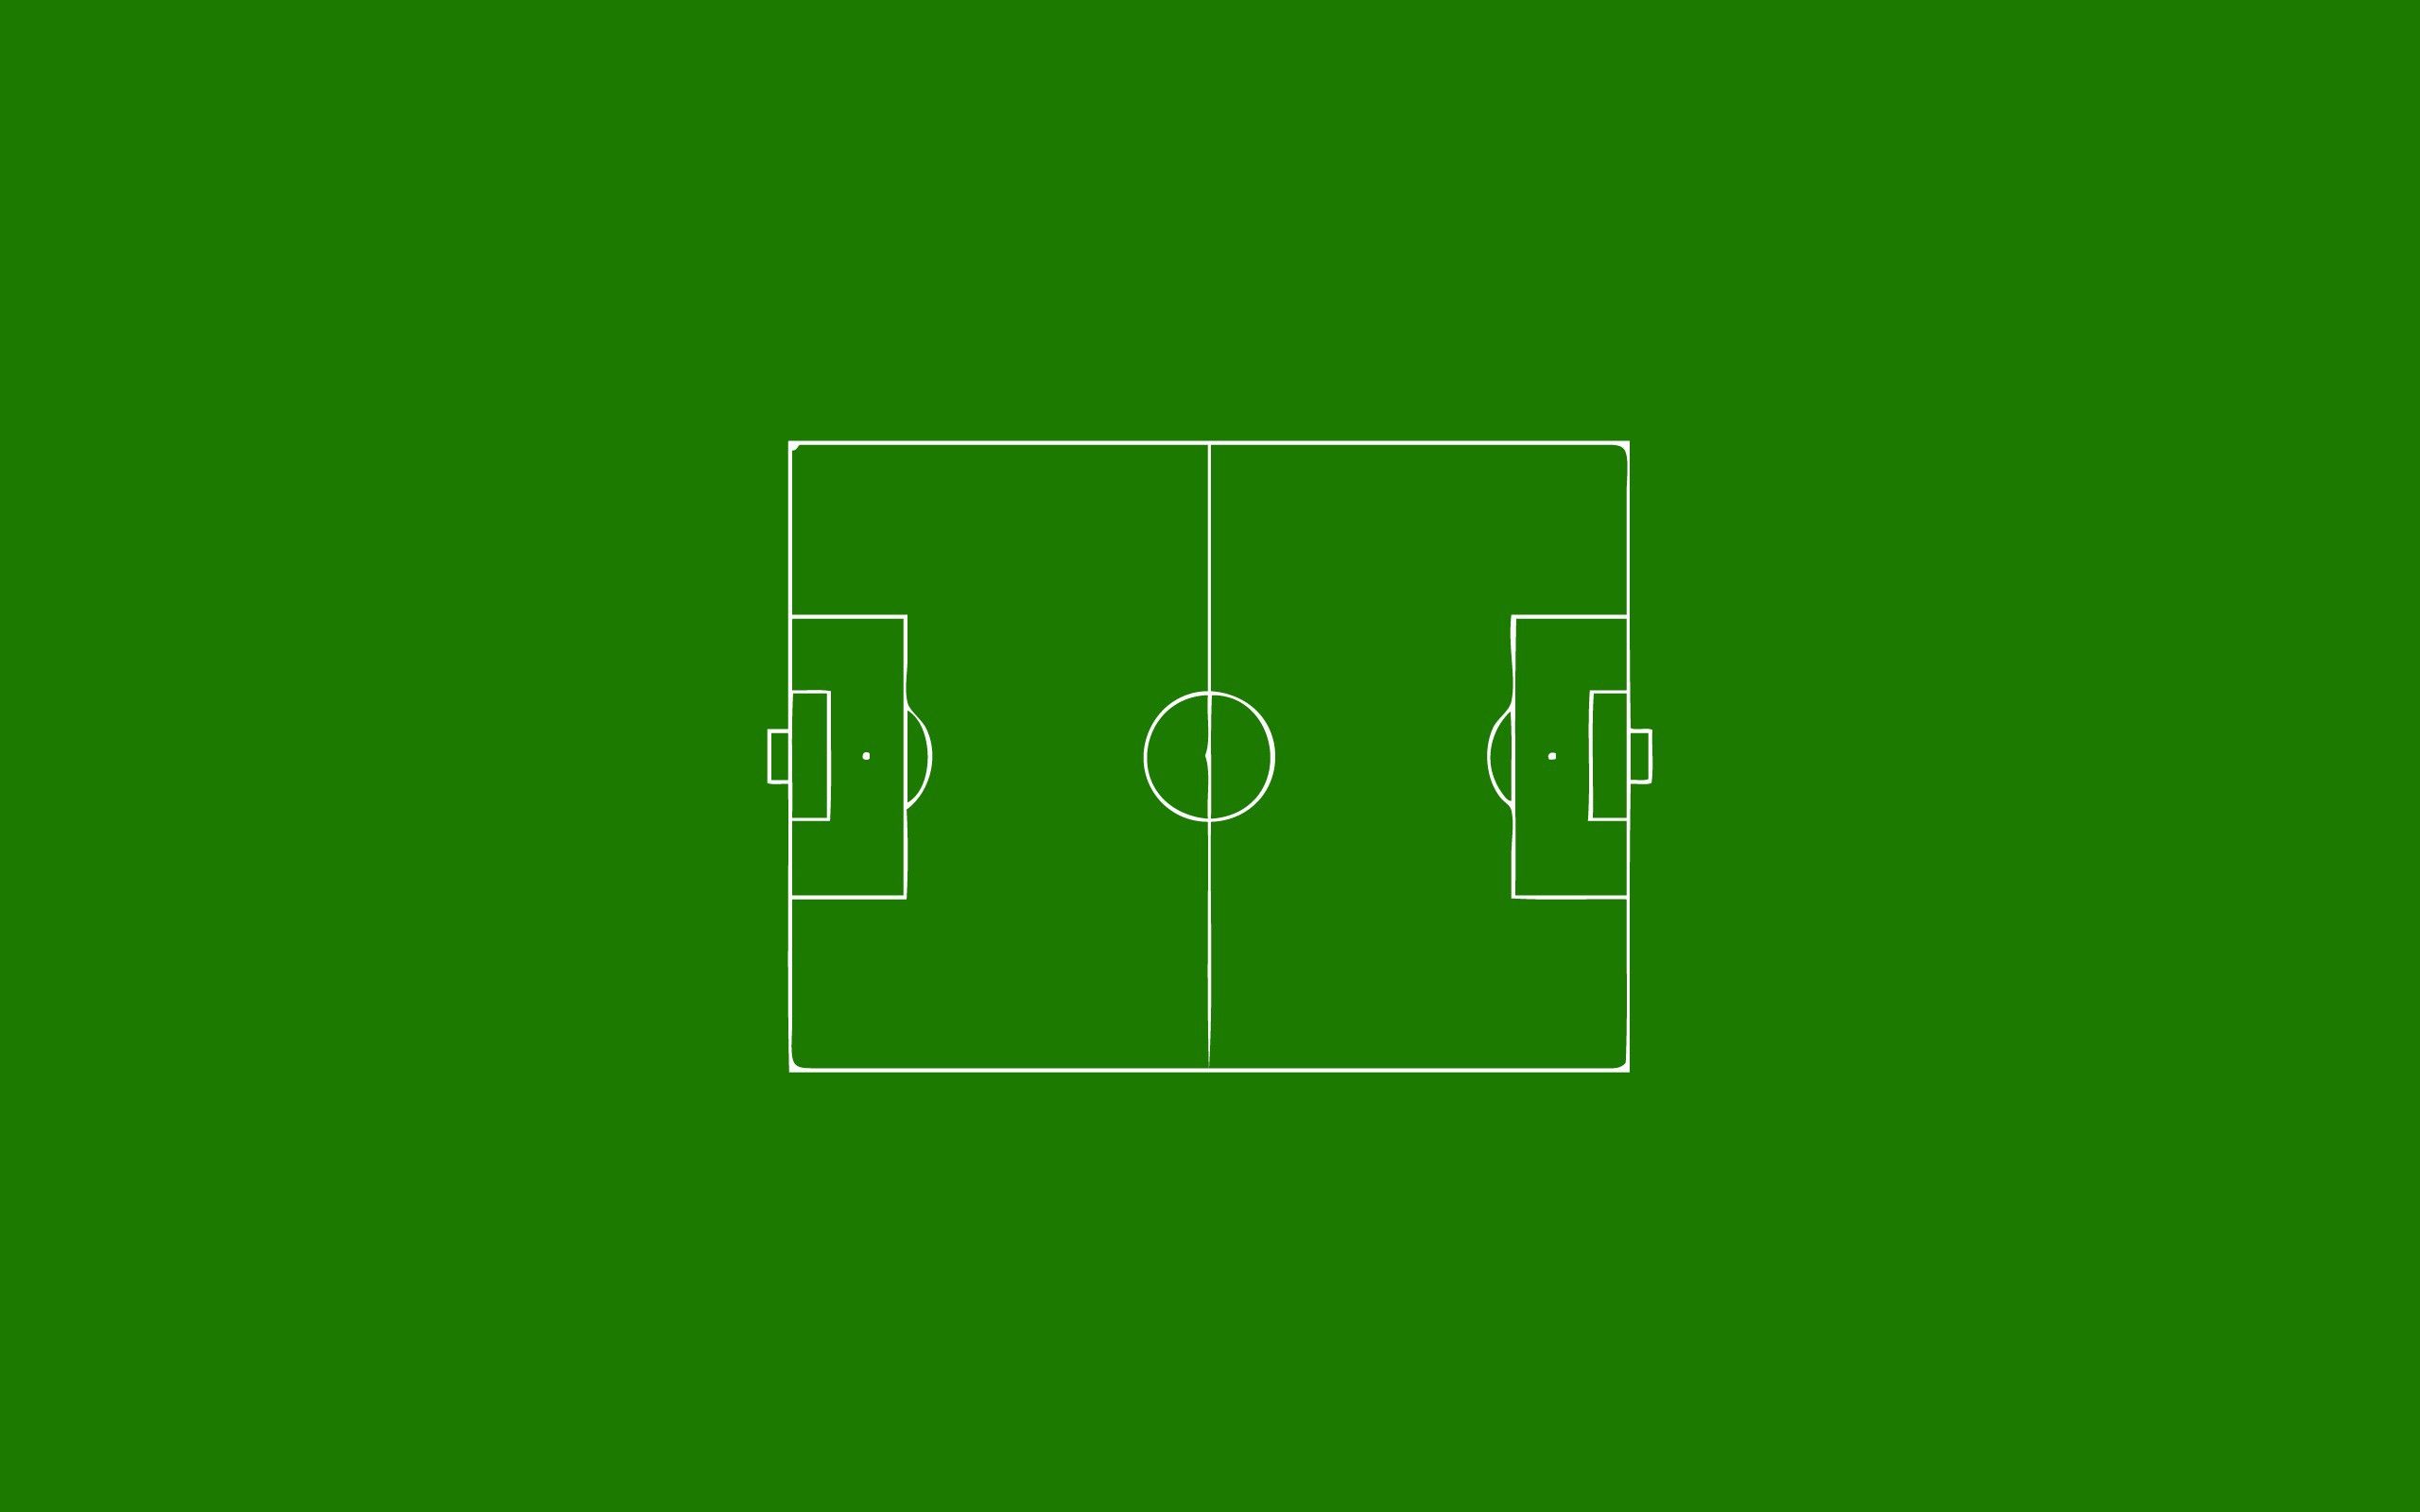 Fields football field minimalistic soccer wallpaper. Football field, Soccer, Football